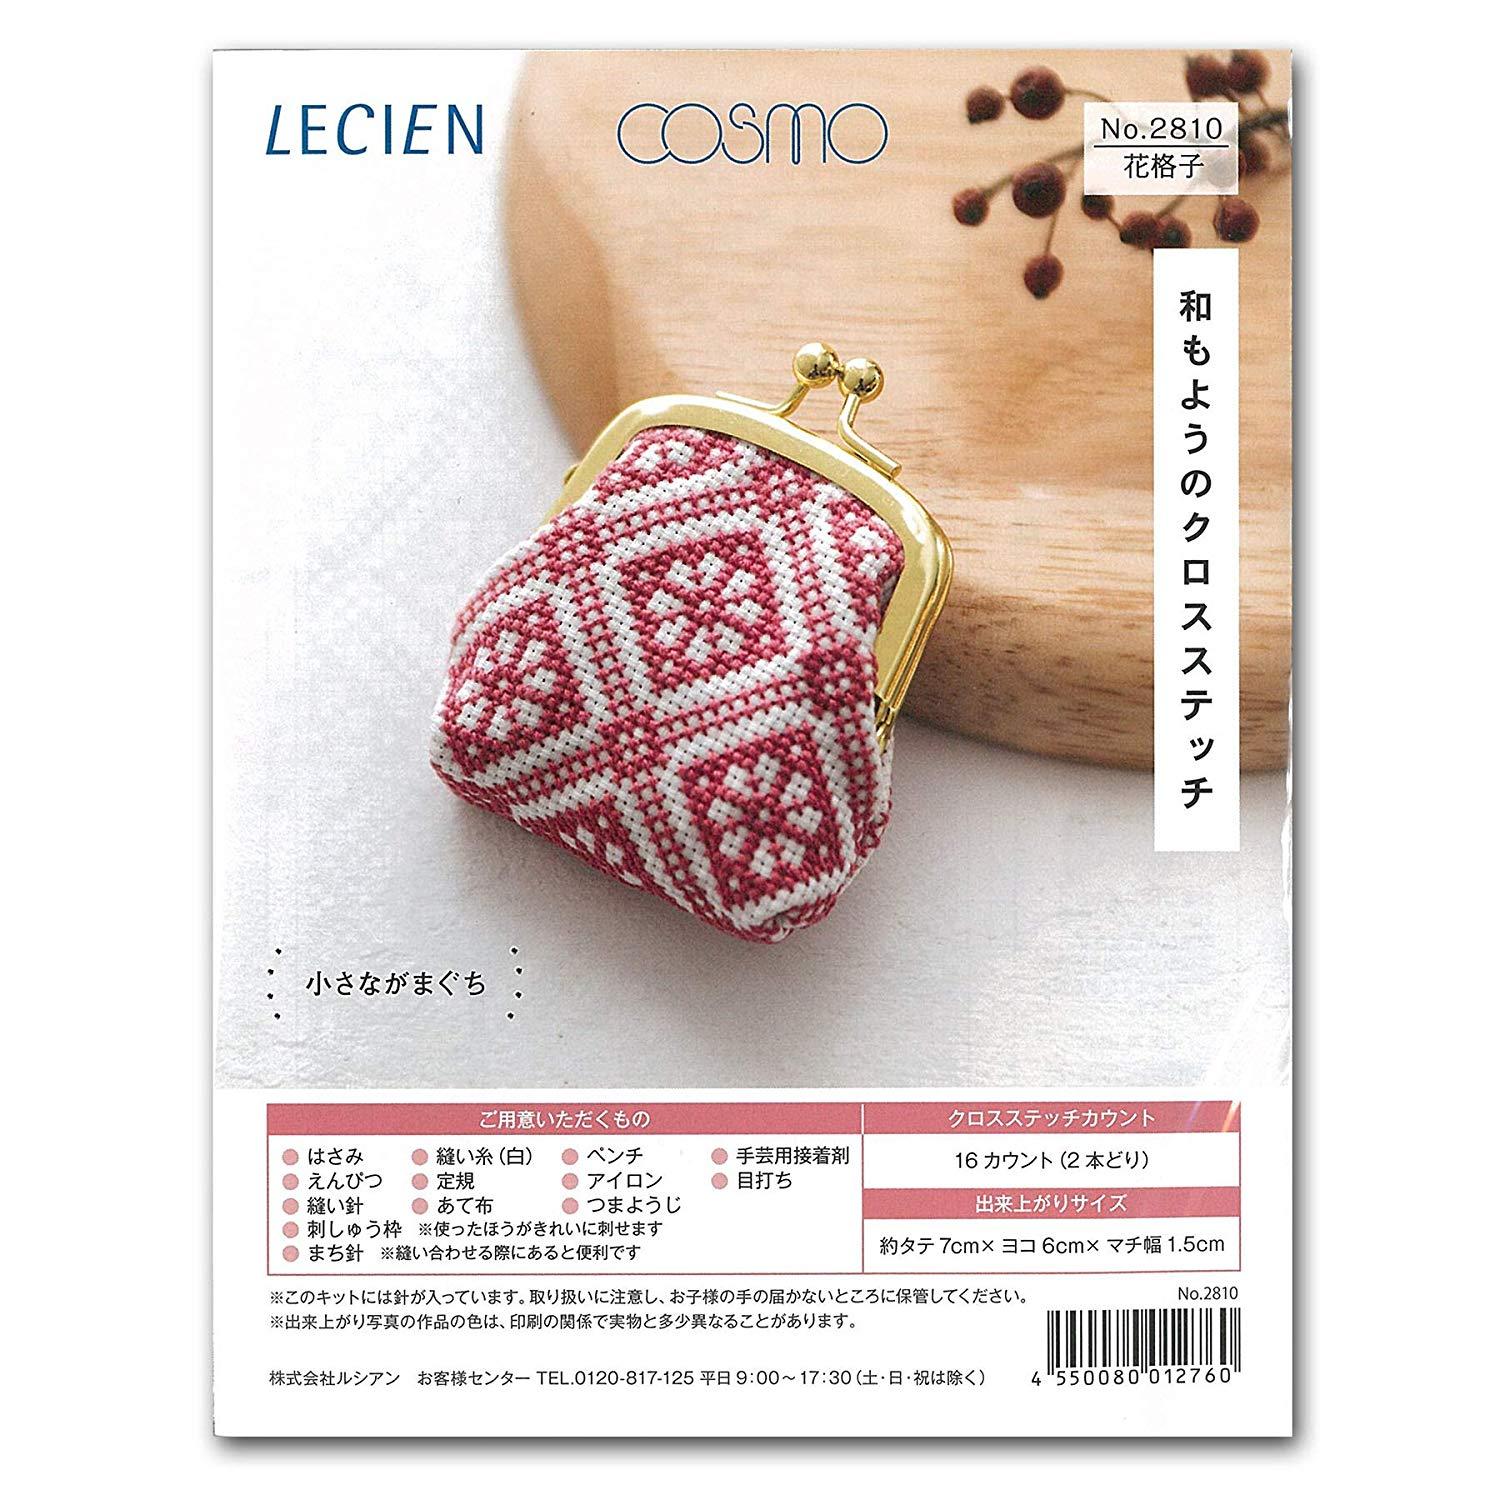 LECIEN (ルシアン) 刺繍キット 和もようのクロスステッチ 小さながまぐち 花格子・2810 (1402685)